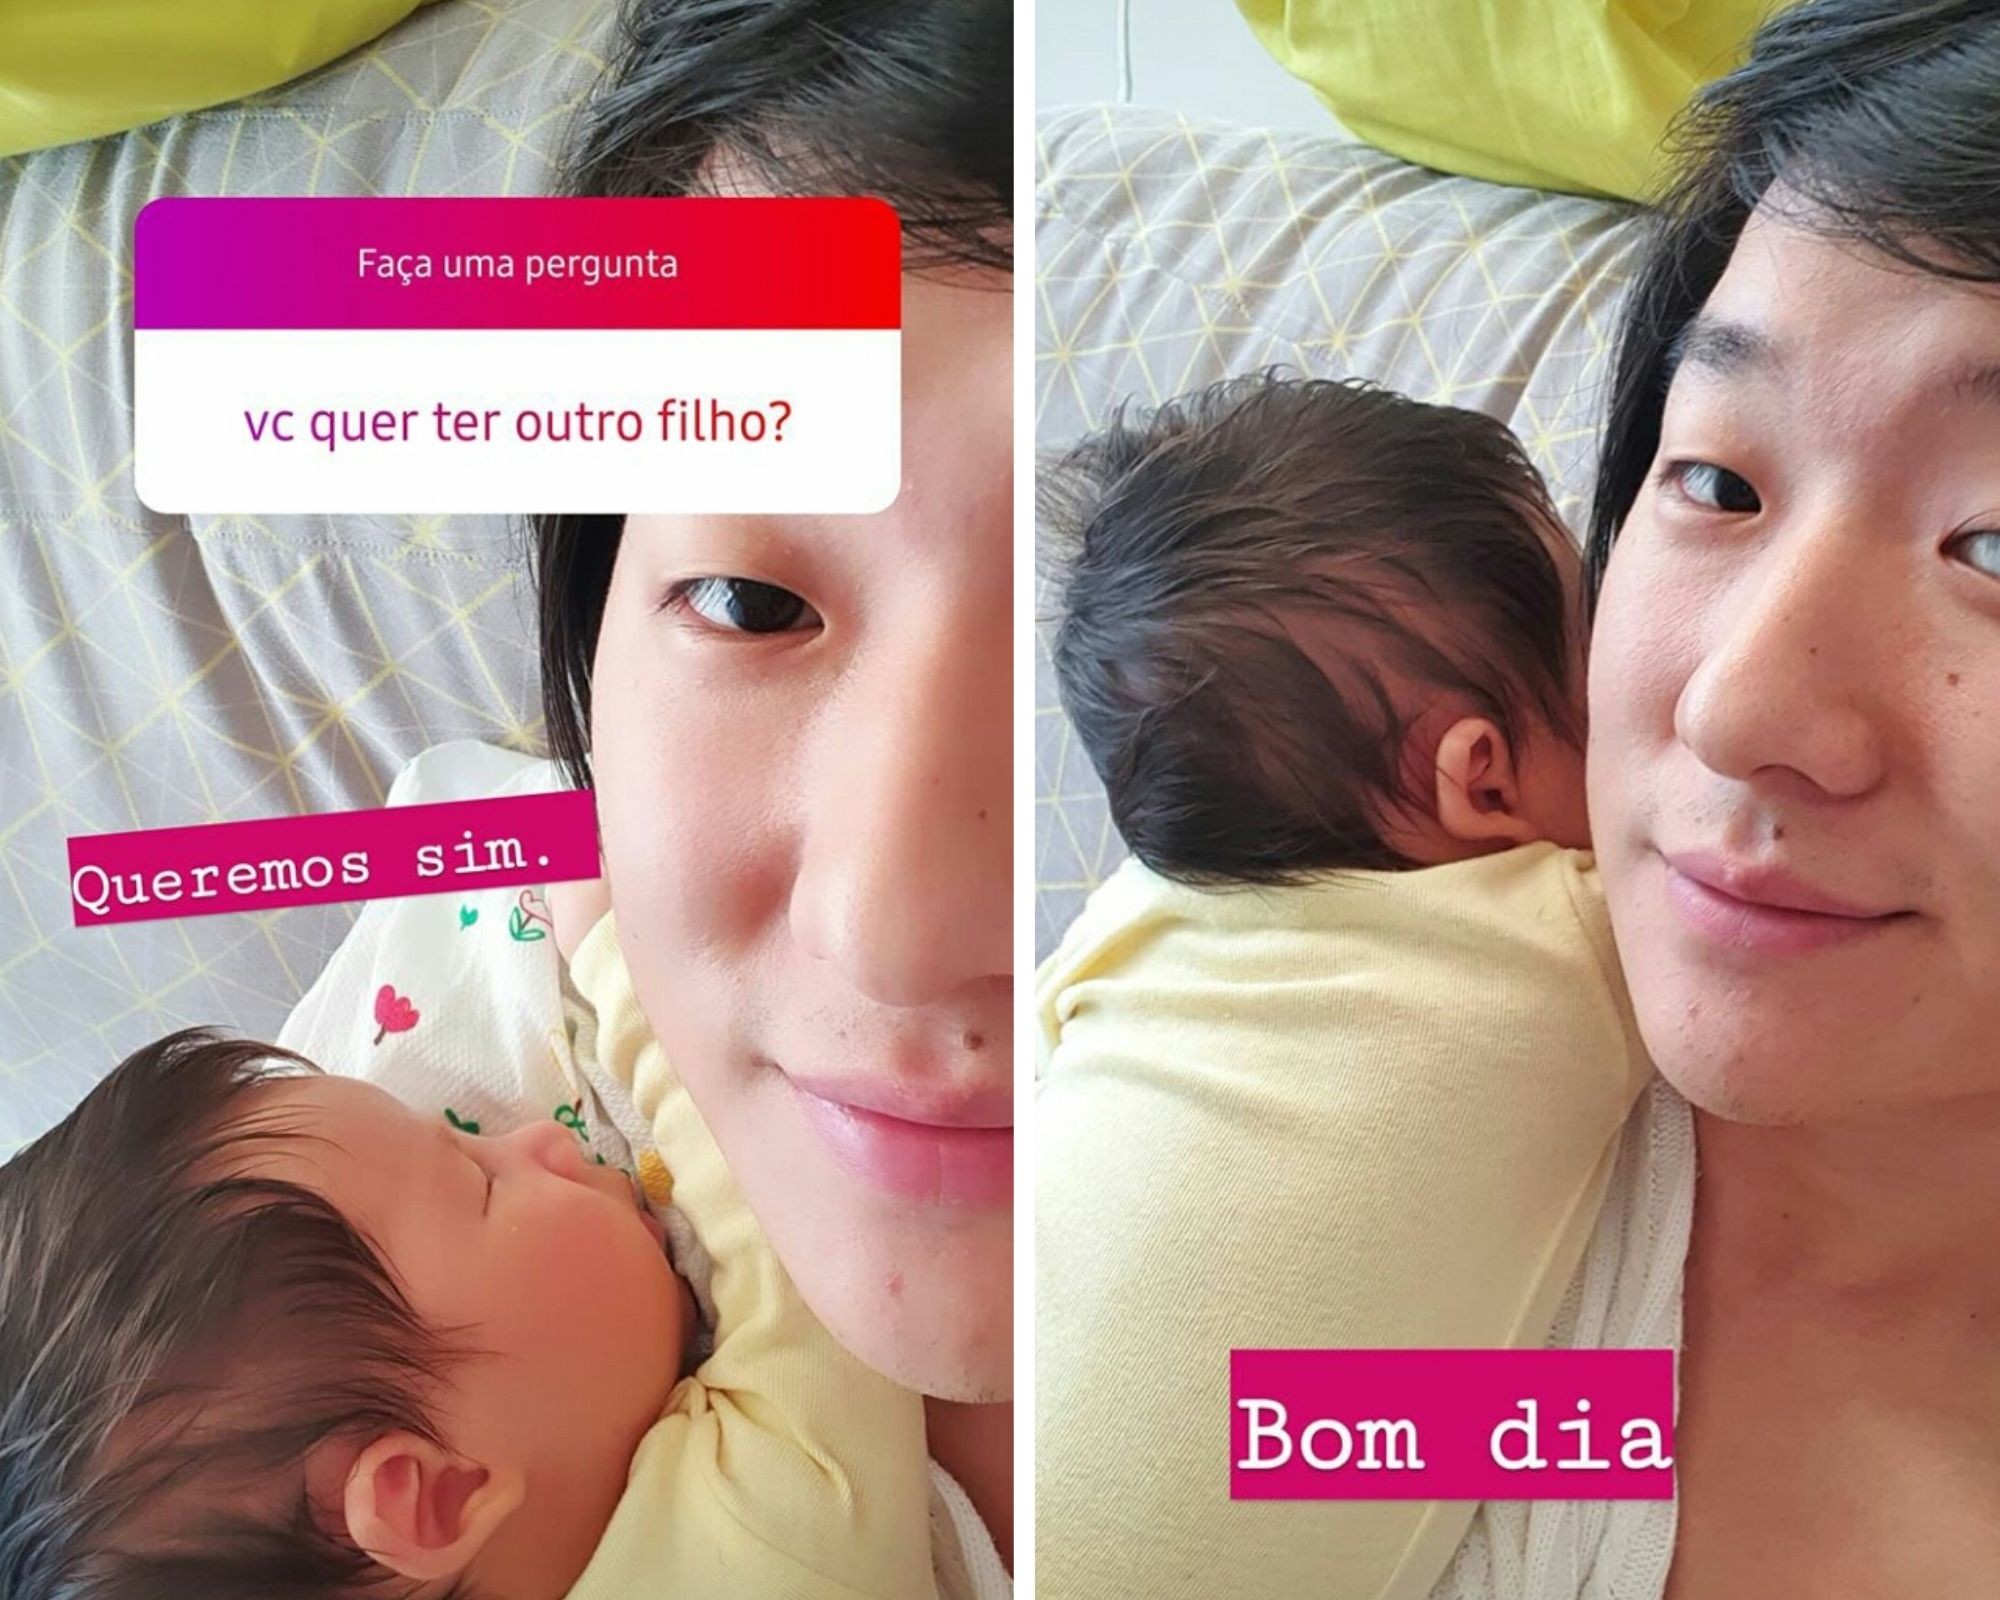 Pyong Lee, pai de Jake, afirma que quer ter mais filhos com Sammy, sua mulher (Foto: Reprodução/Instagram)